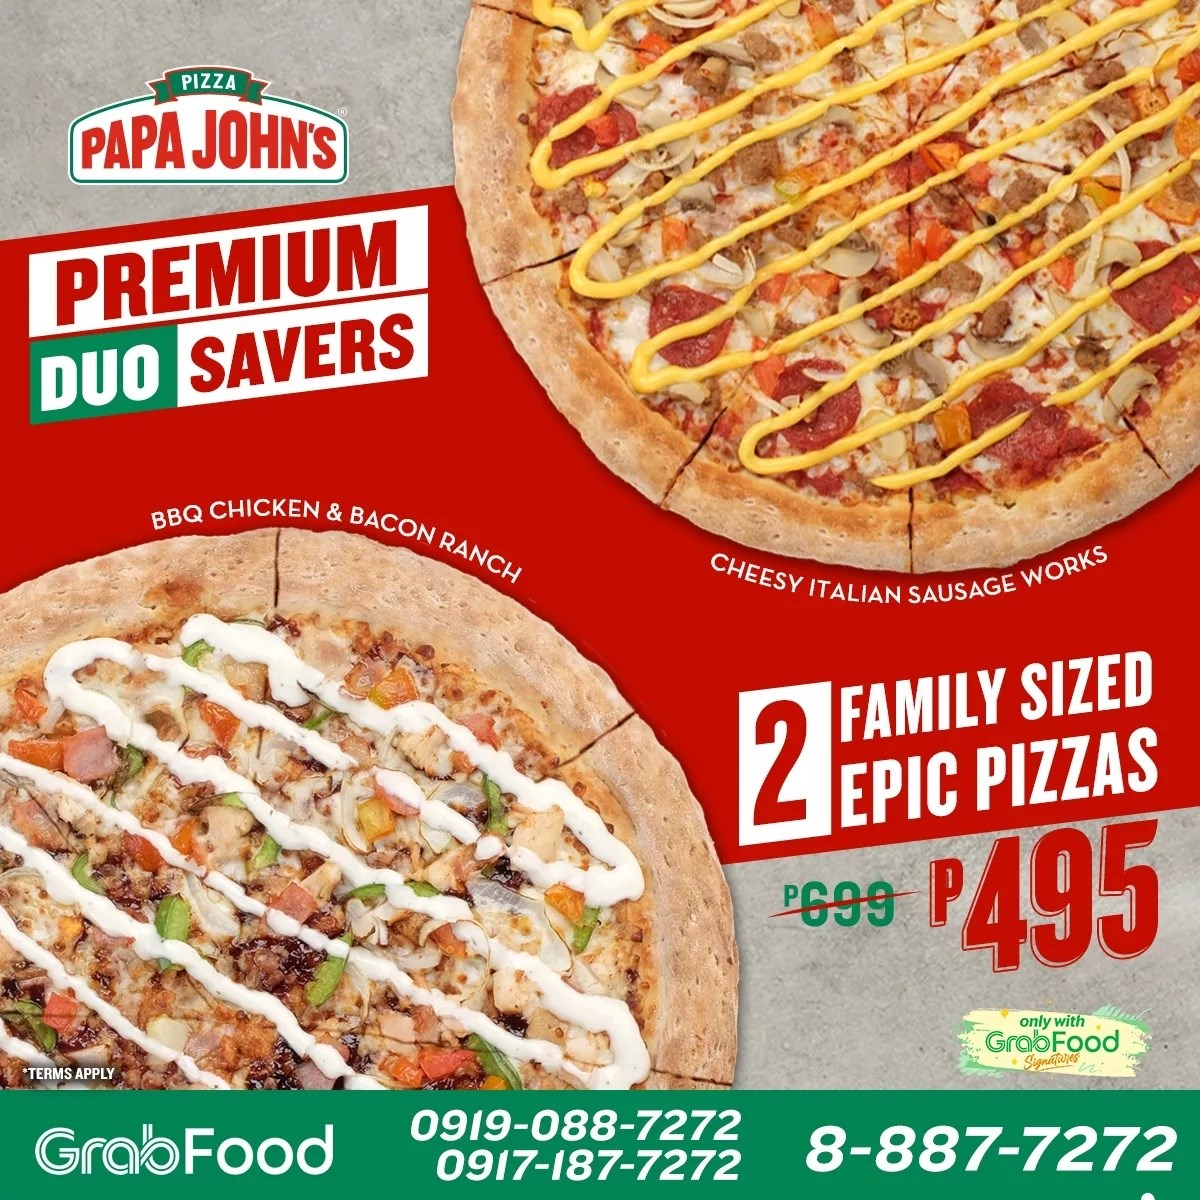 Papa John’s Premium DUO Savers Promo Manila On Sale